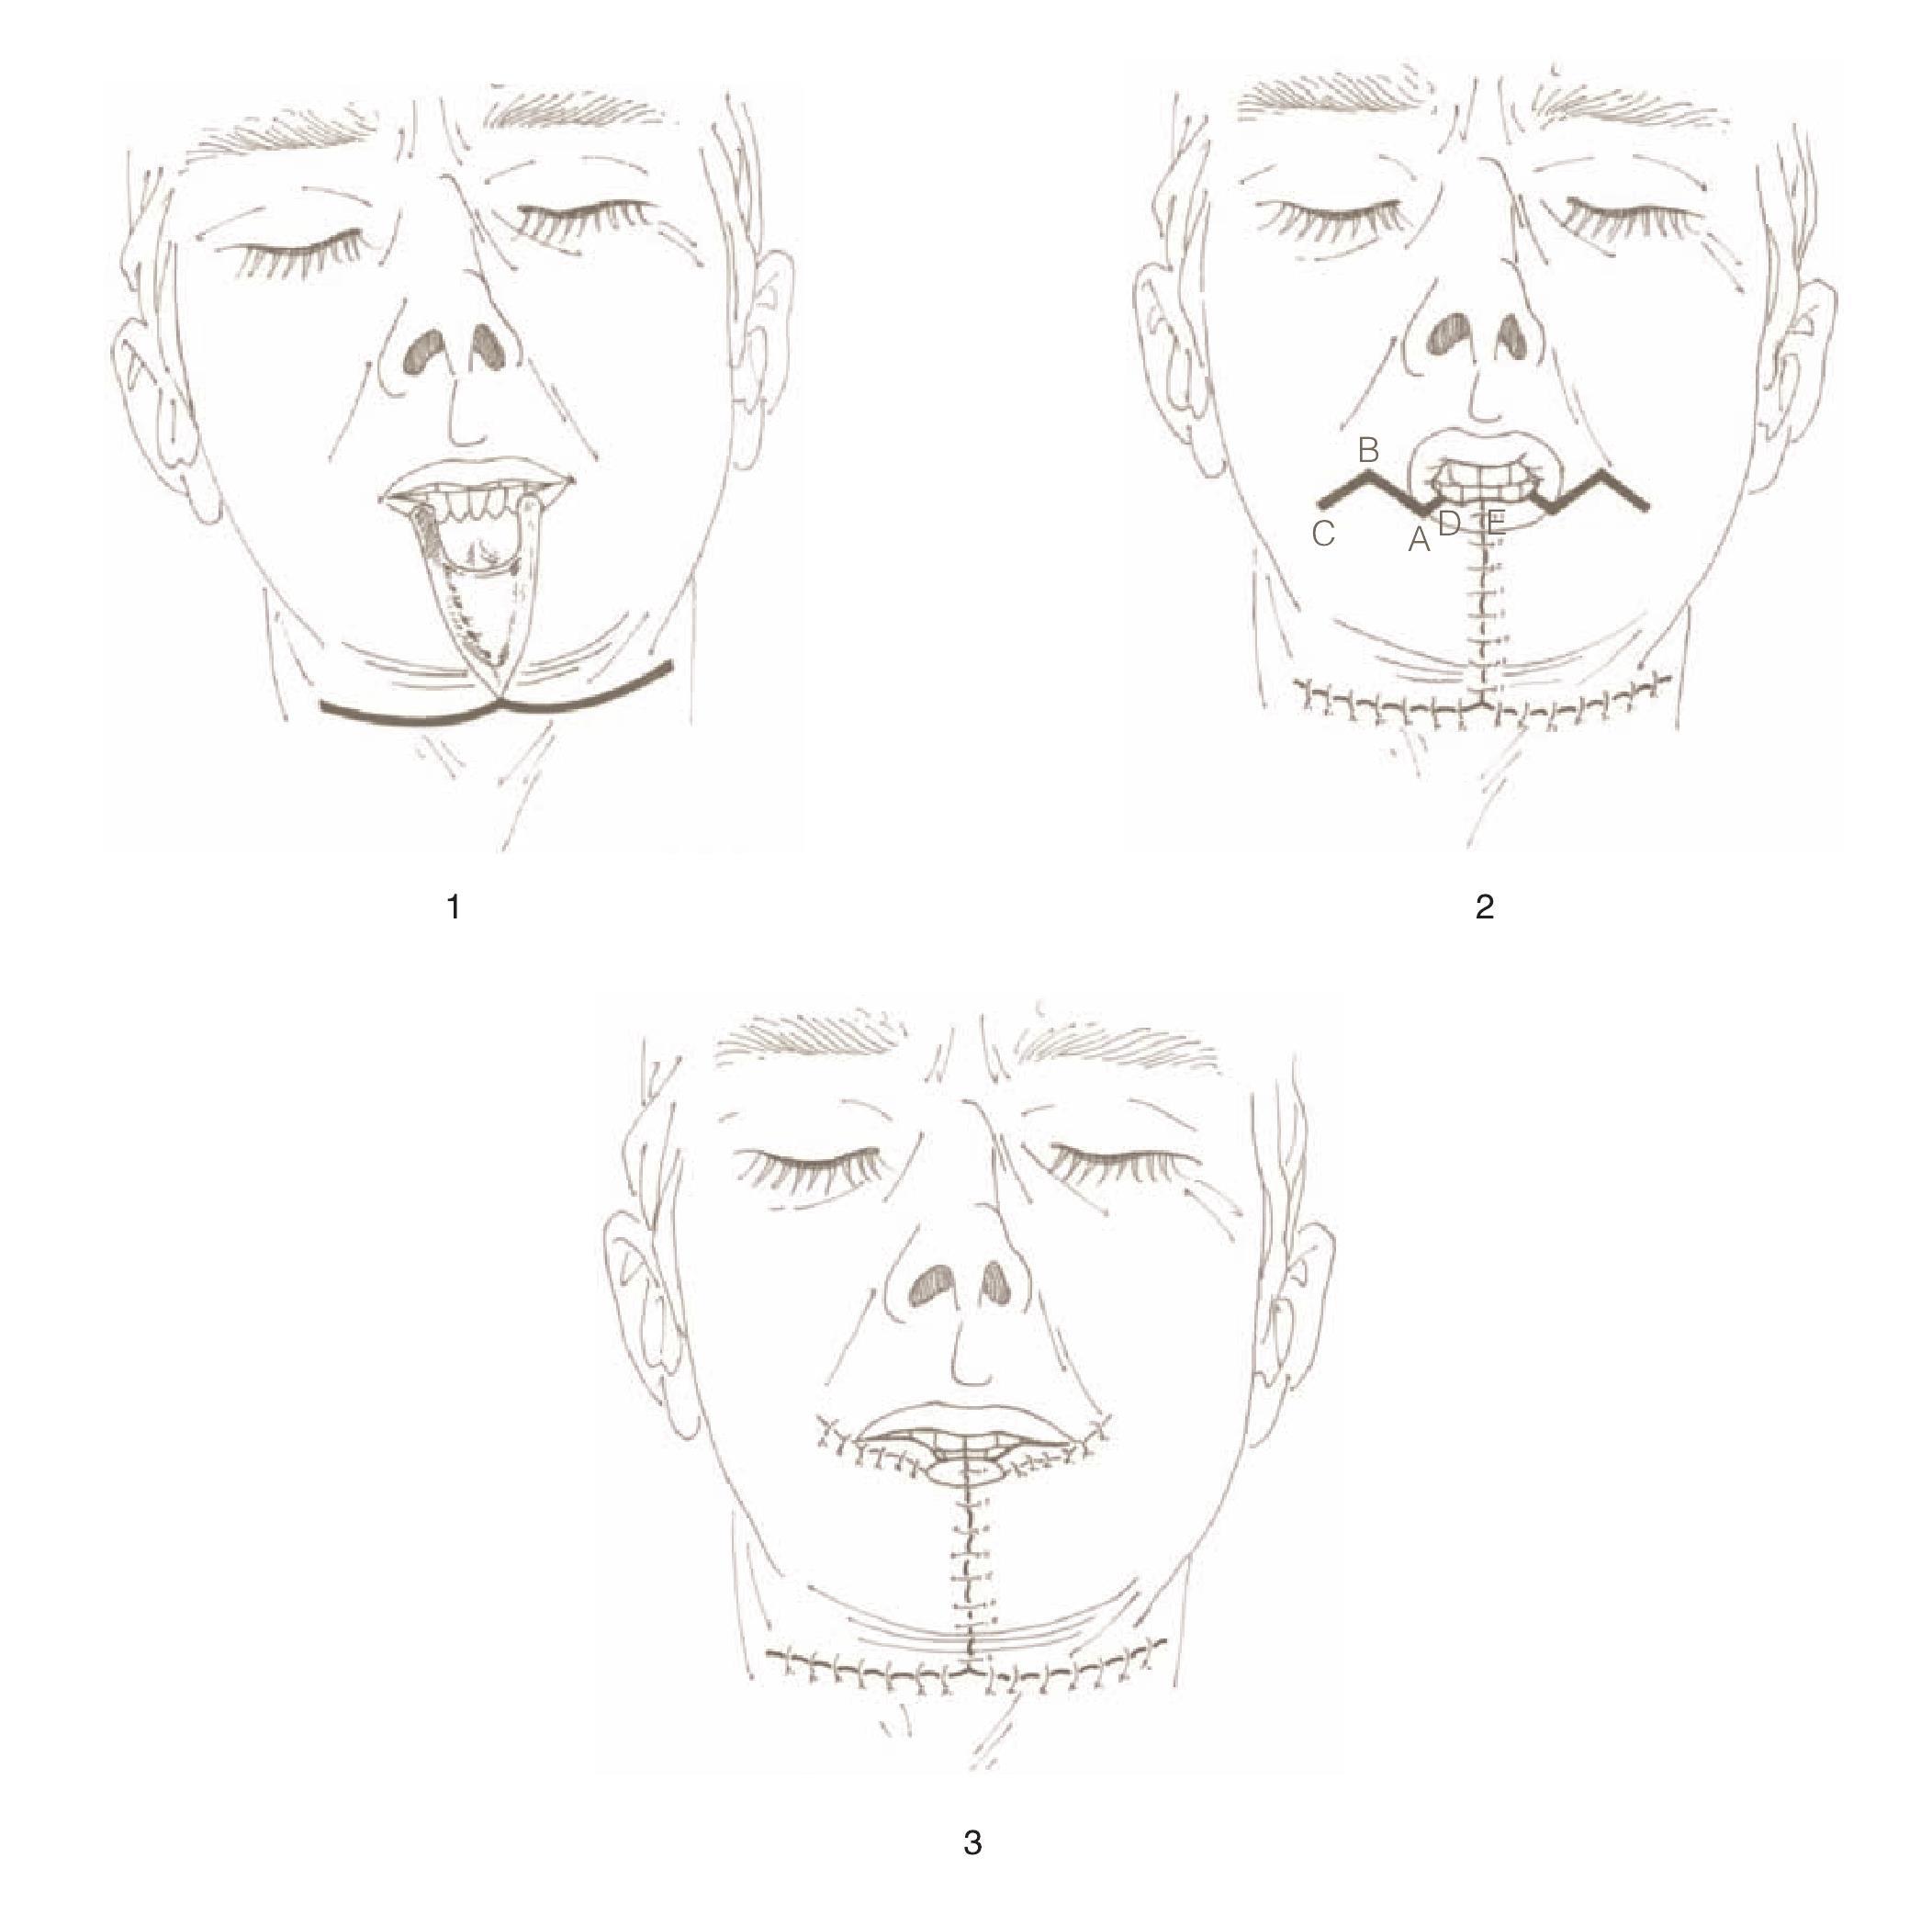 口腔颌面部缺损游离皮瓣修复中血管吻合的技巧及关键点